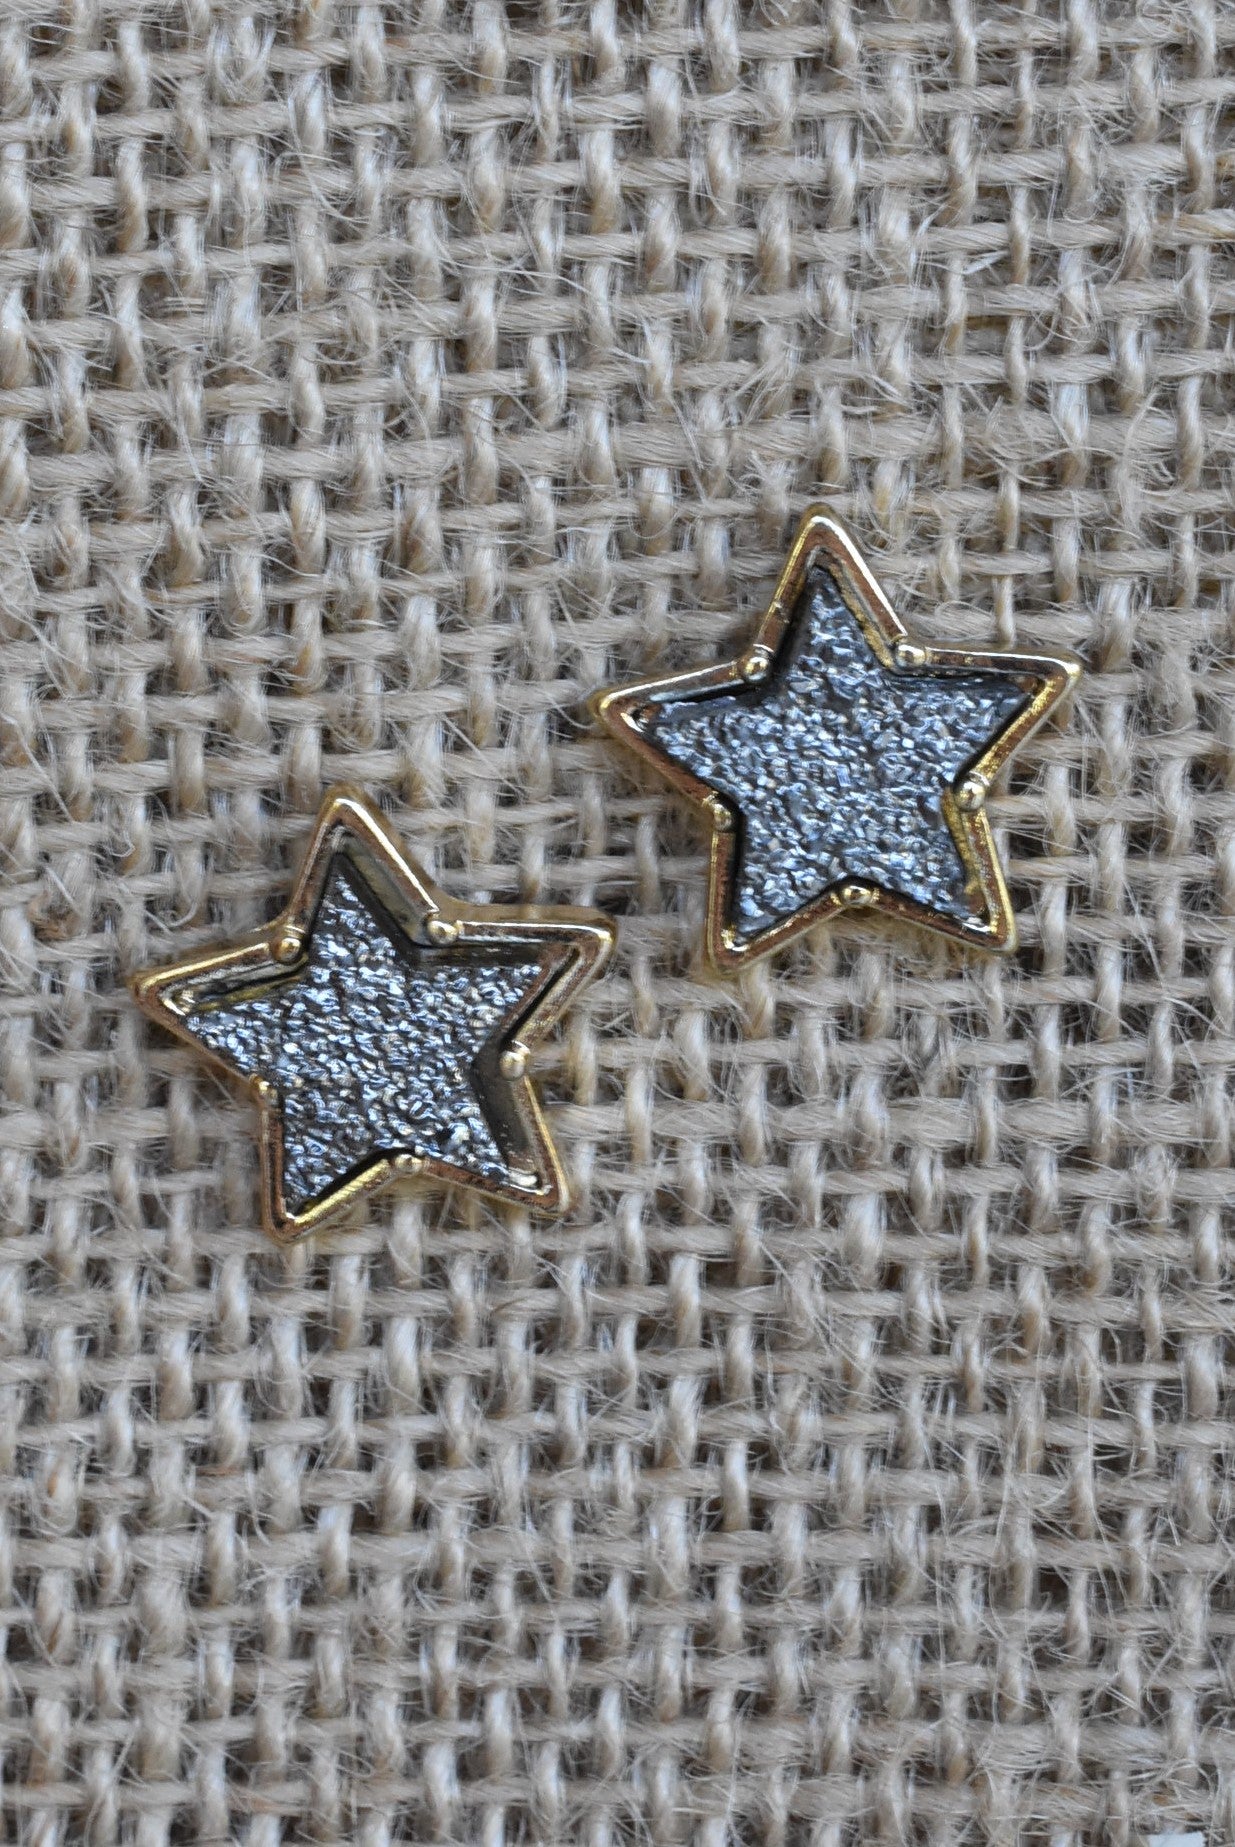 Druzy Star Stud Earrings